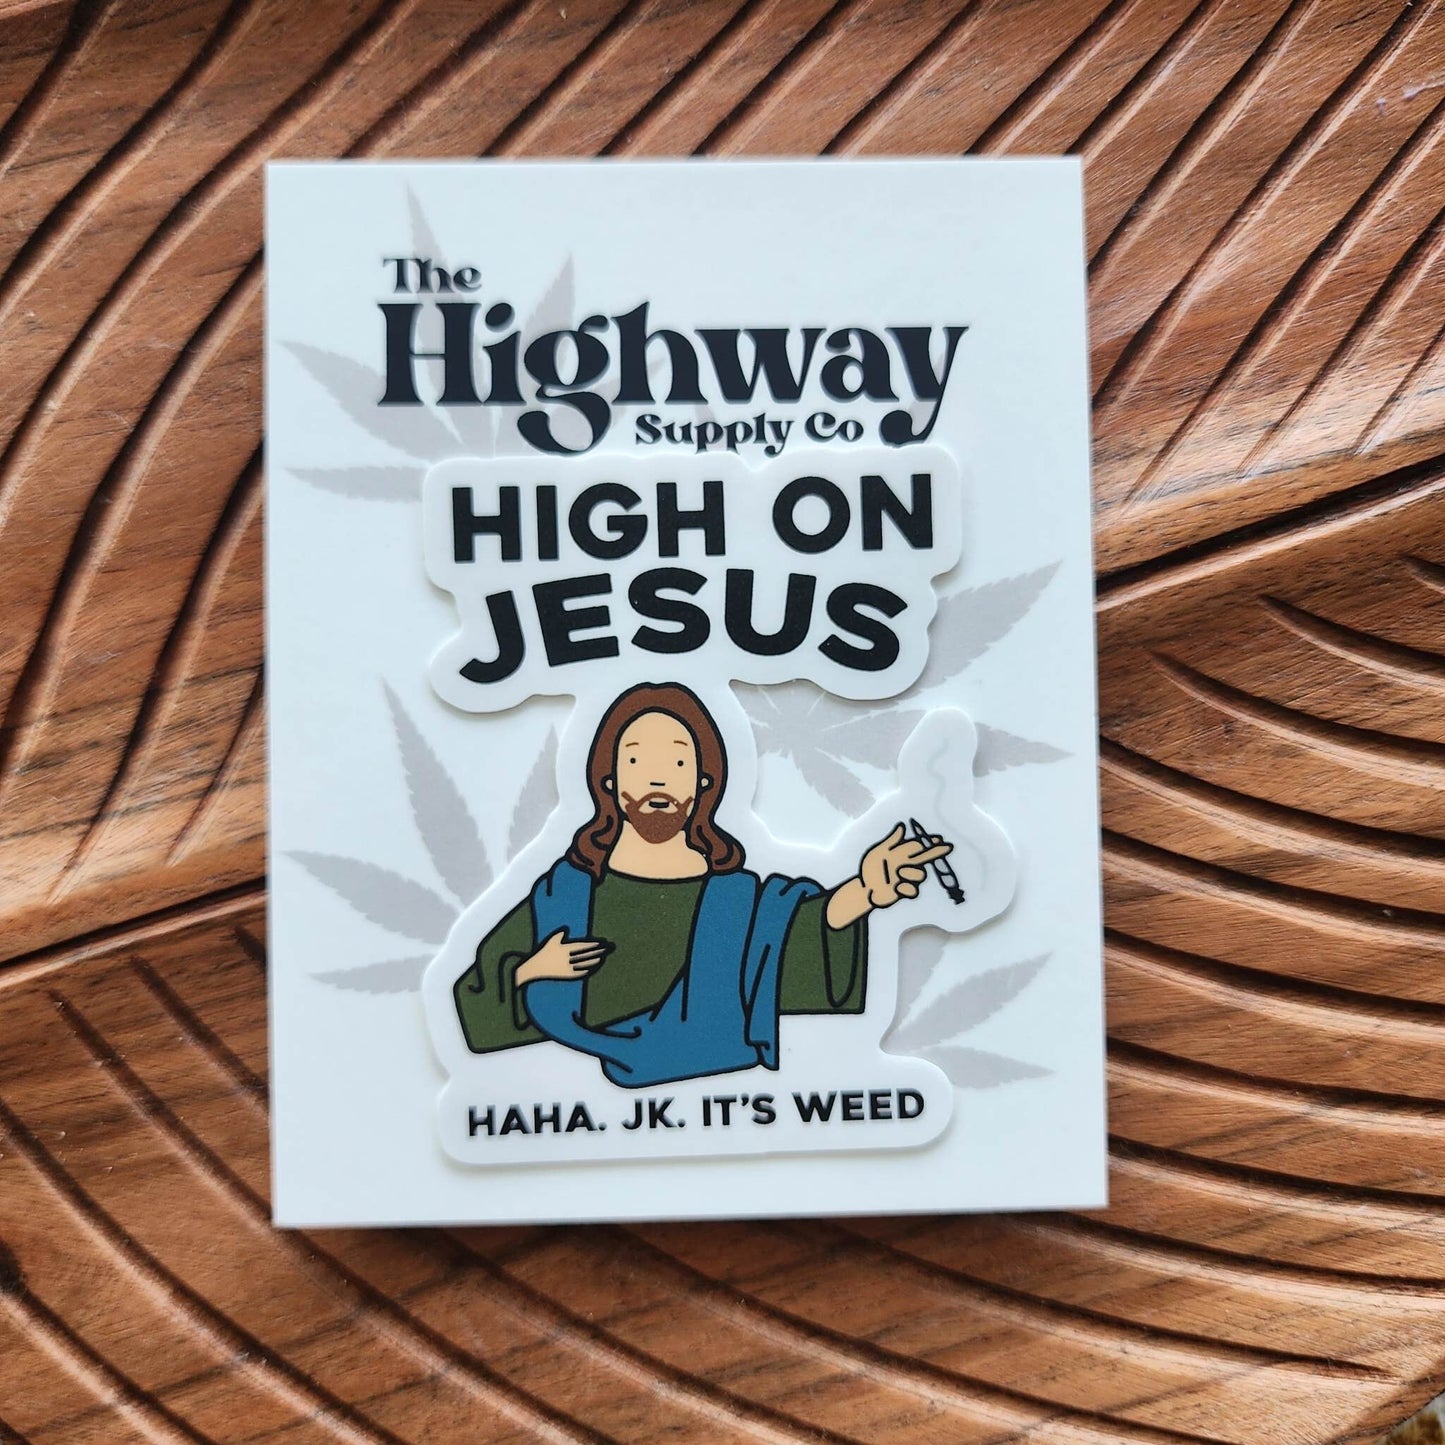 High On Jesus Sticker